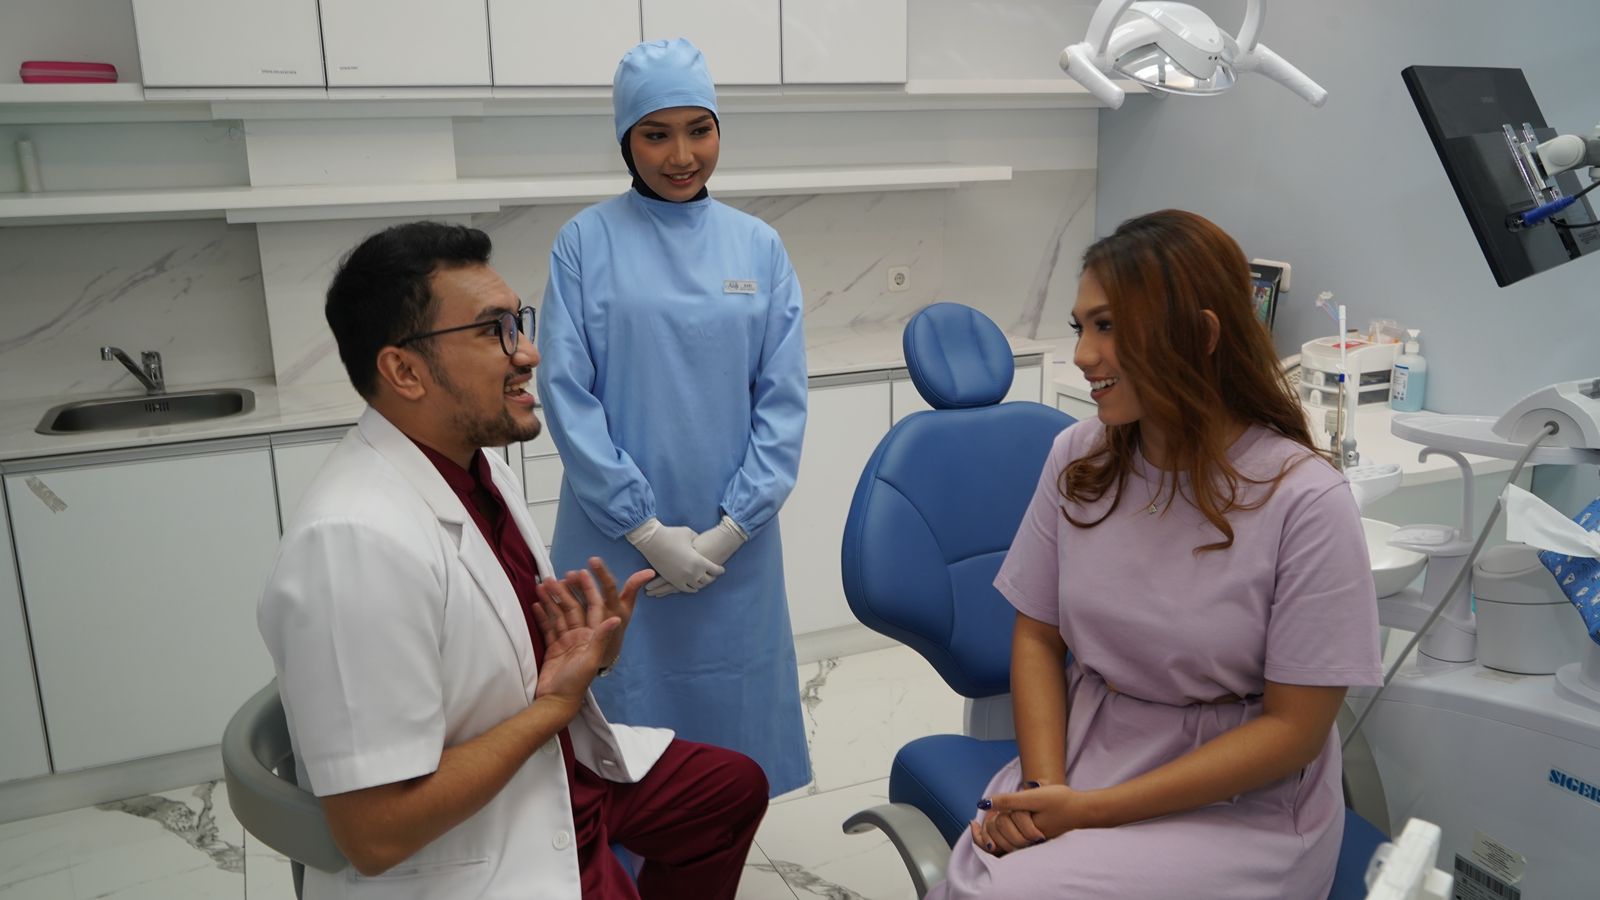 Peringatan Anniversary ke-15 AUDY Dental: Pembukaan Cabang Baru dan Program Sebar Senyum Kebaikan